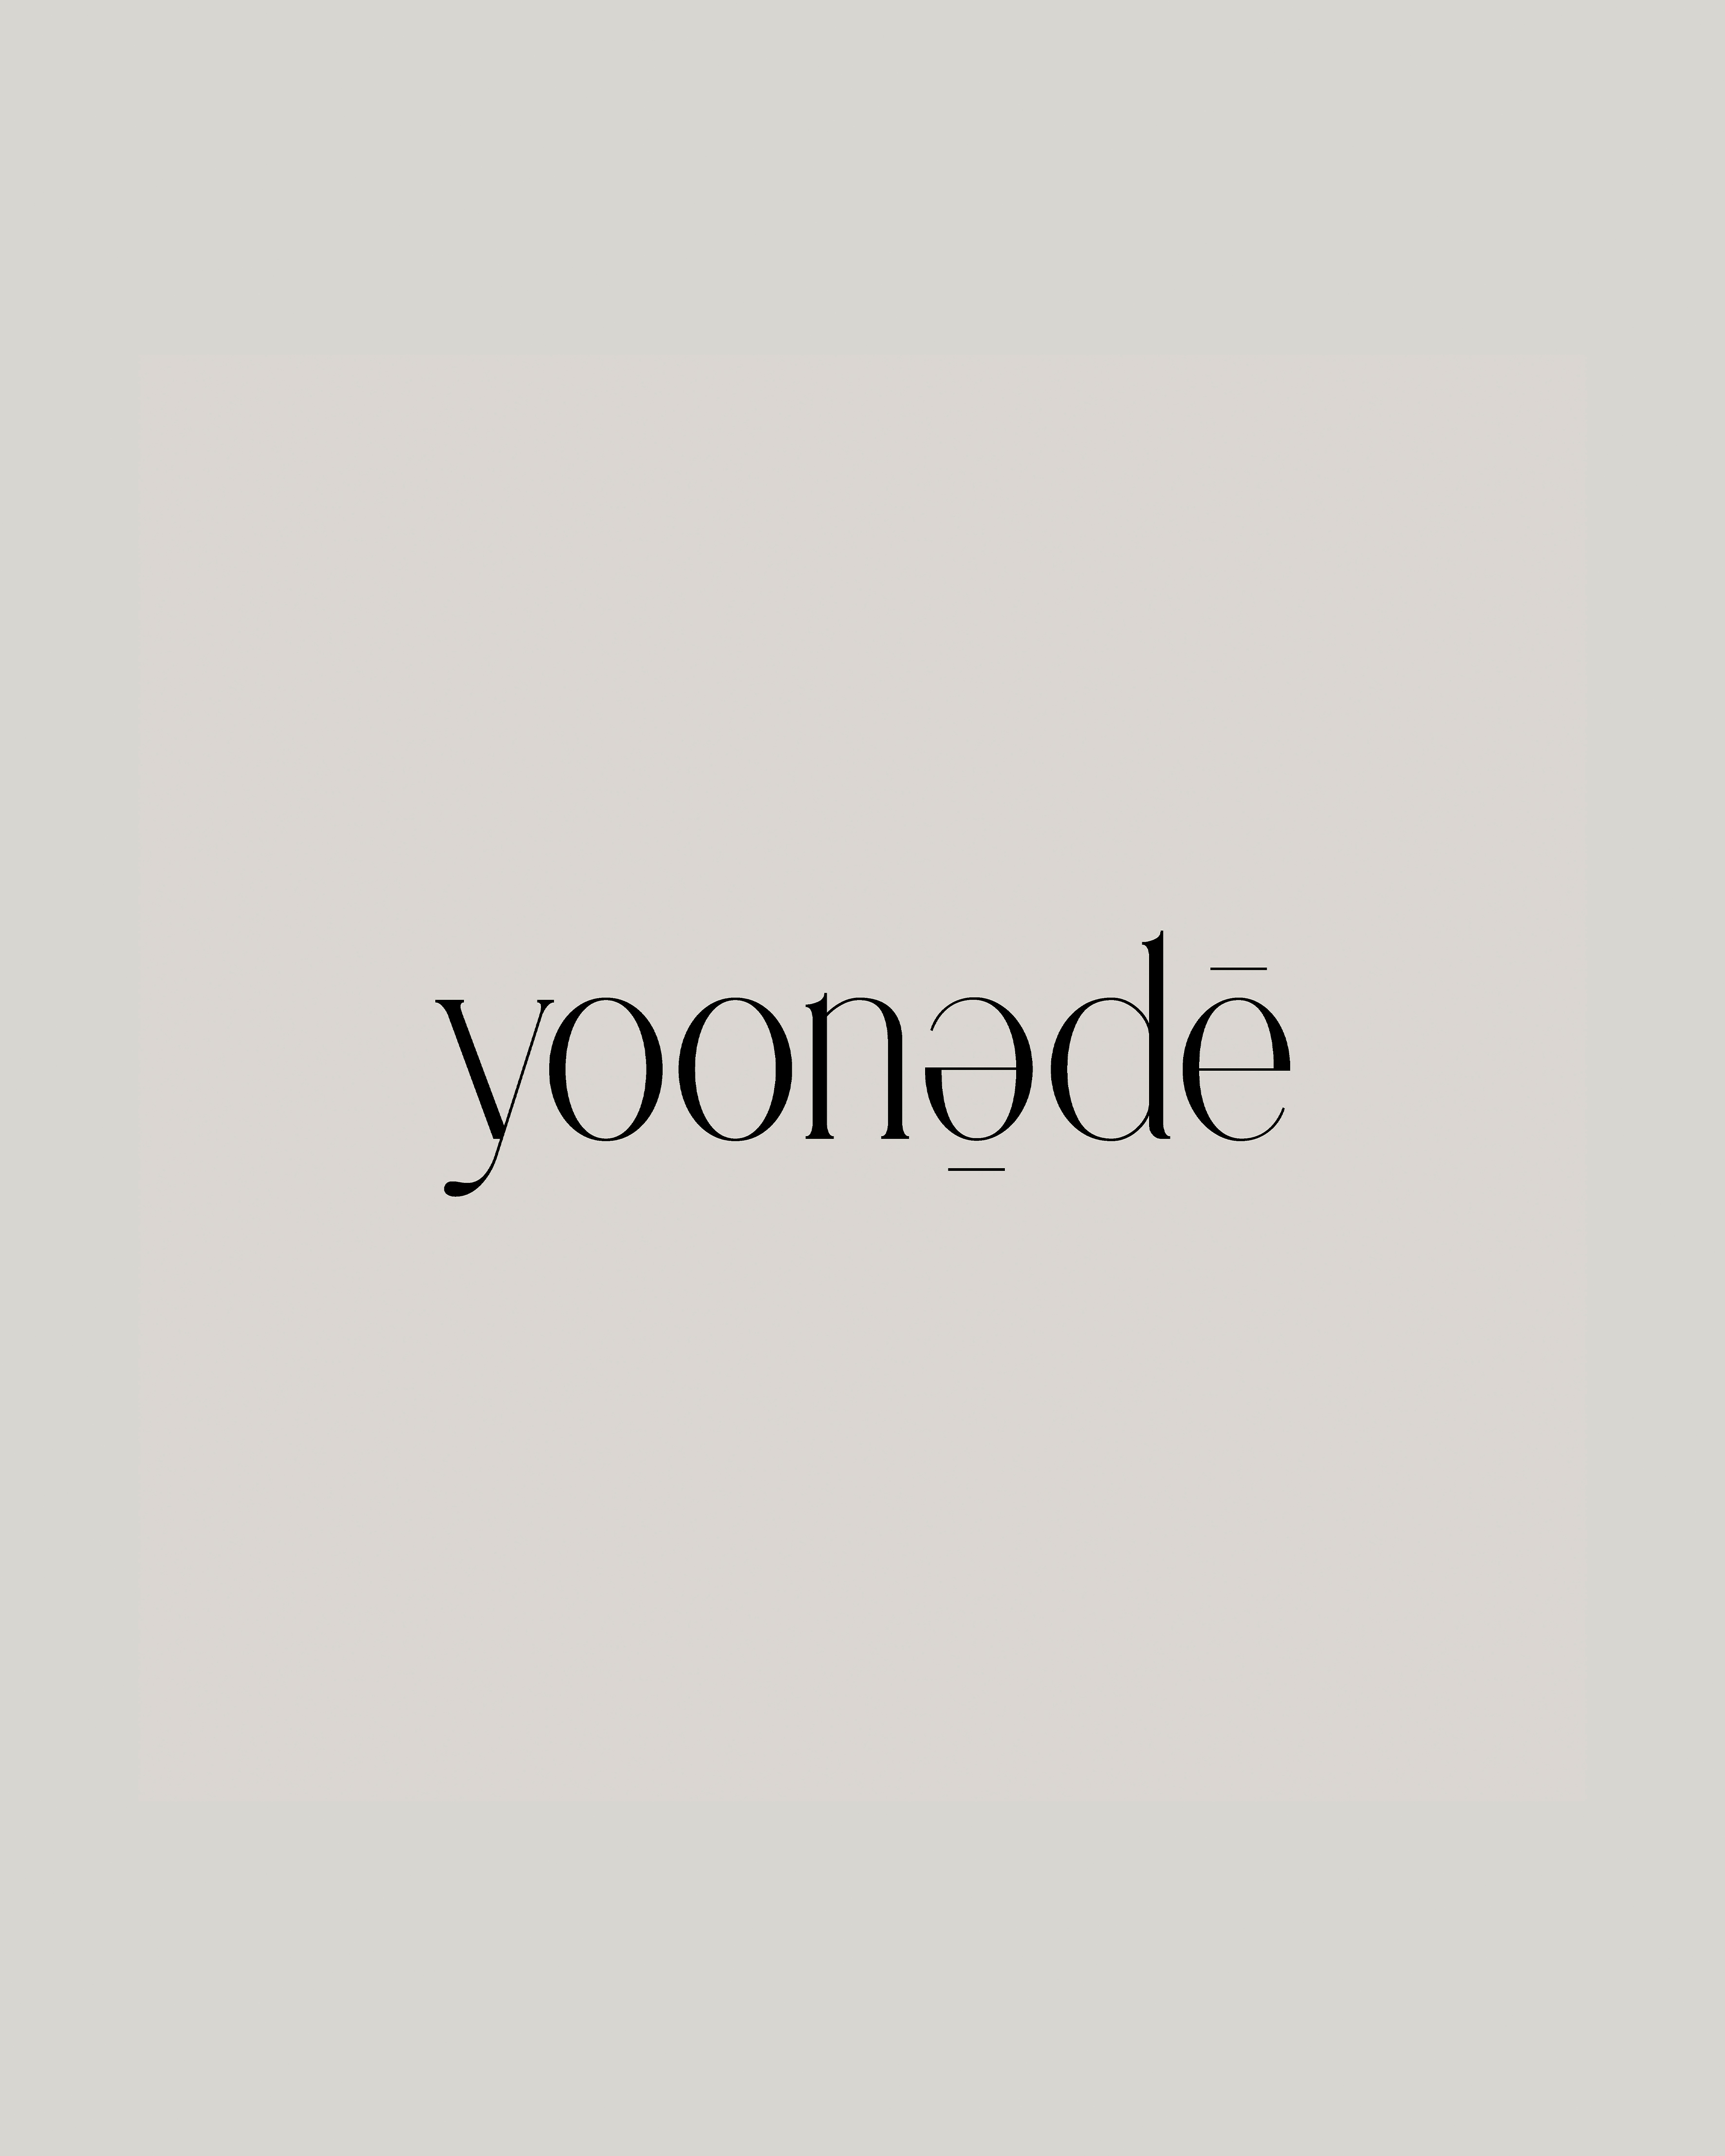 yoonede_exhibition_logo